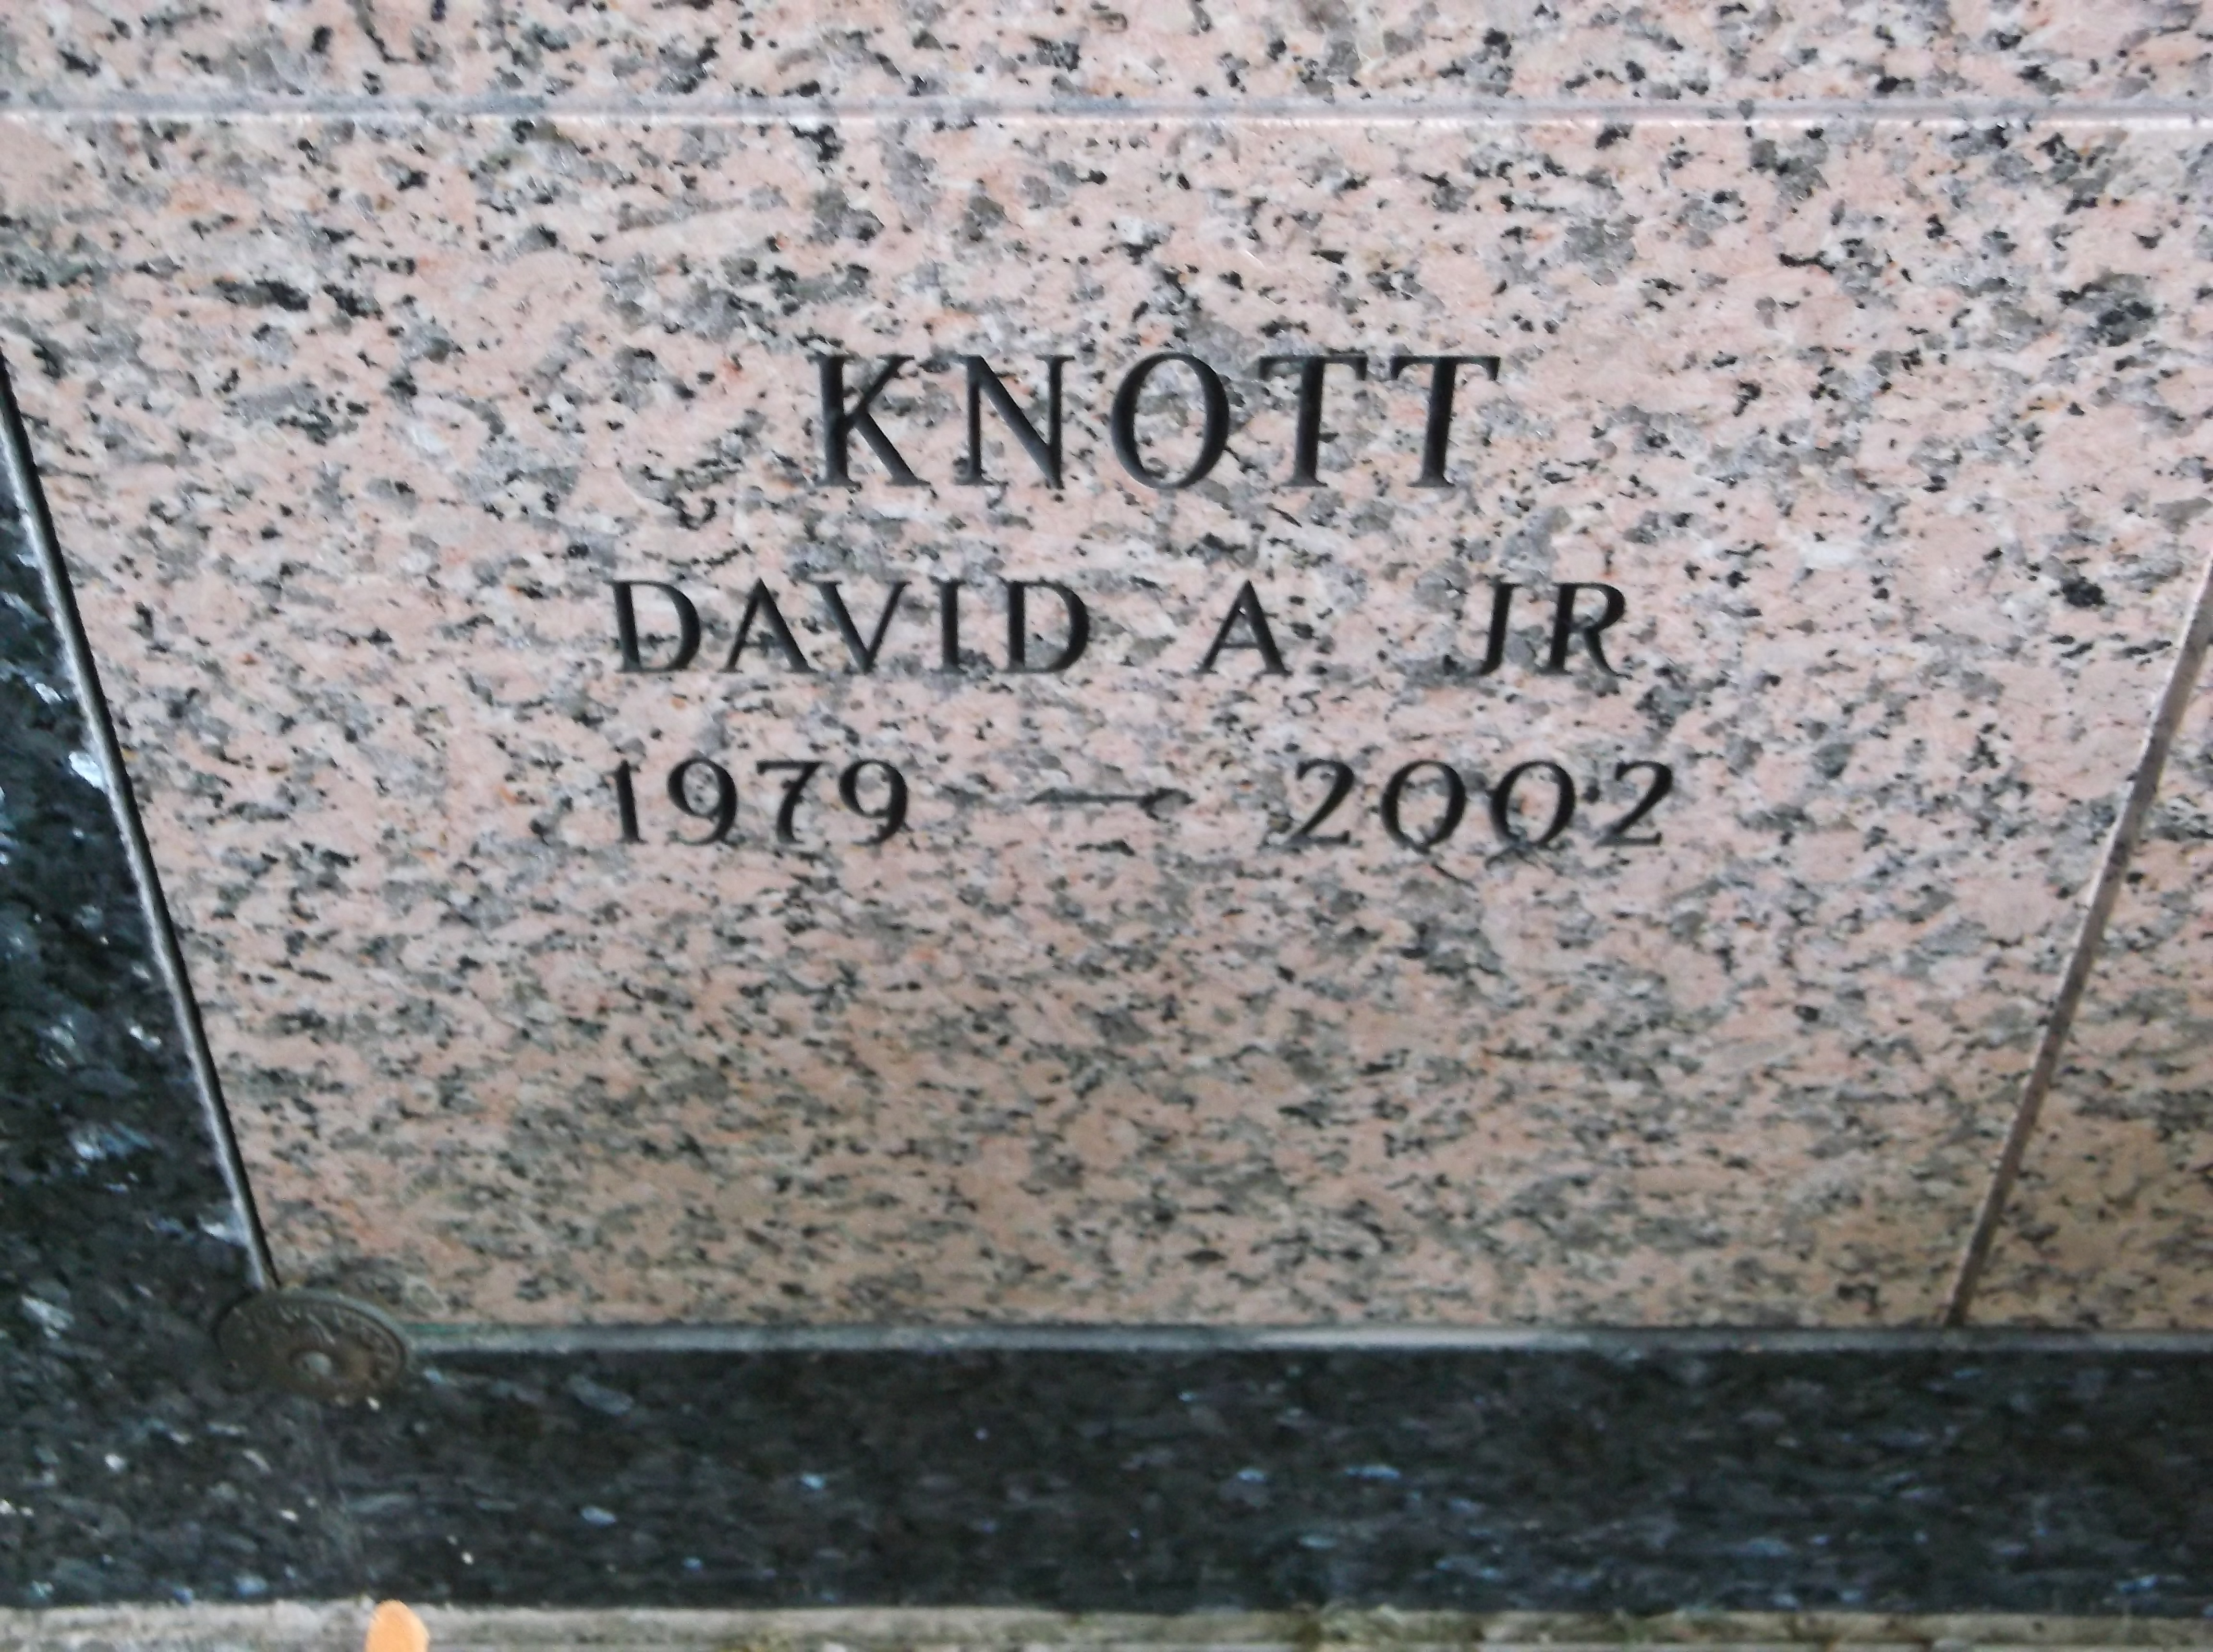 David A Knott, Jr